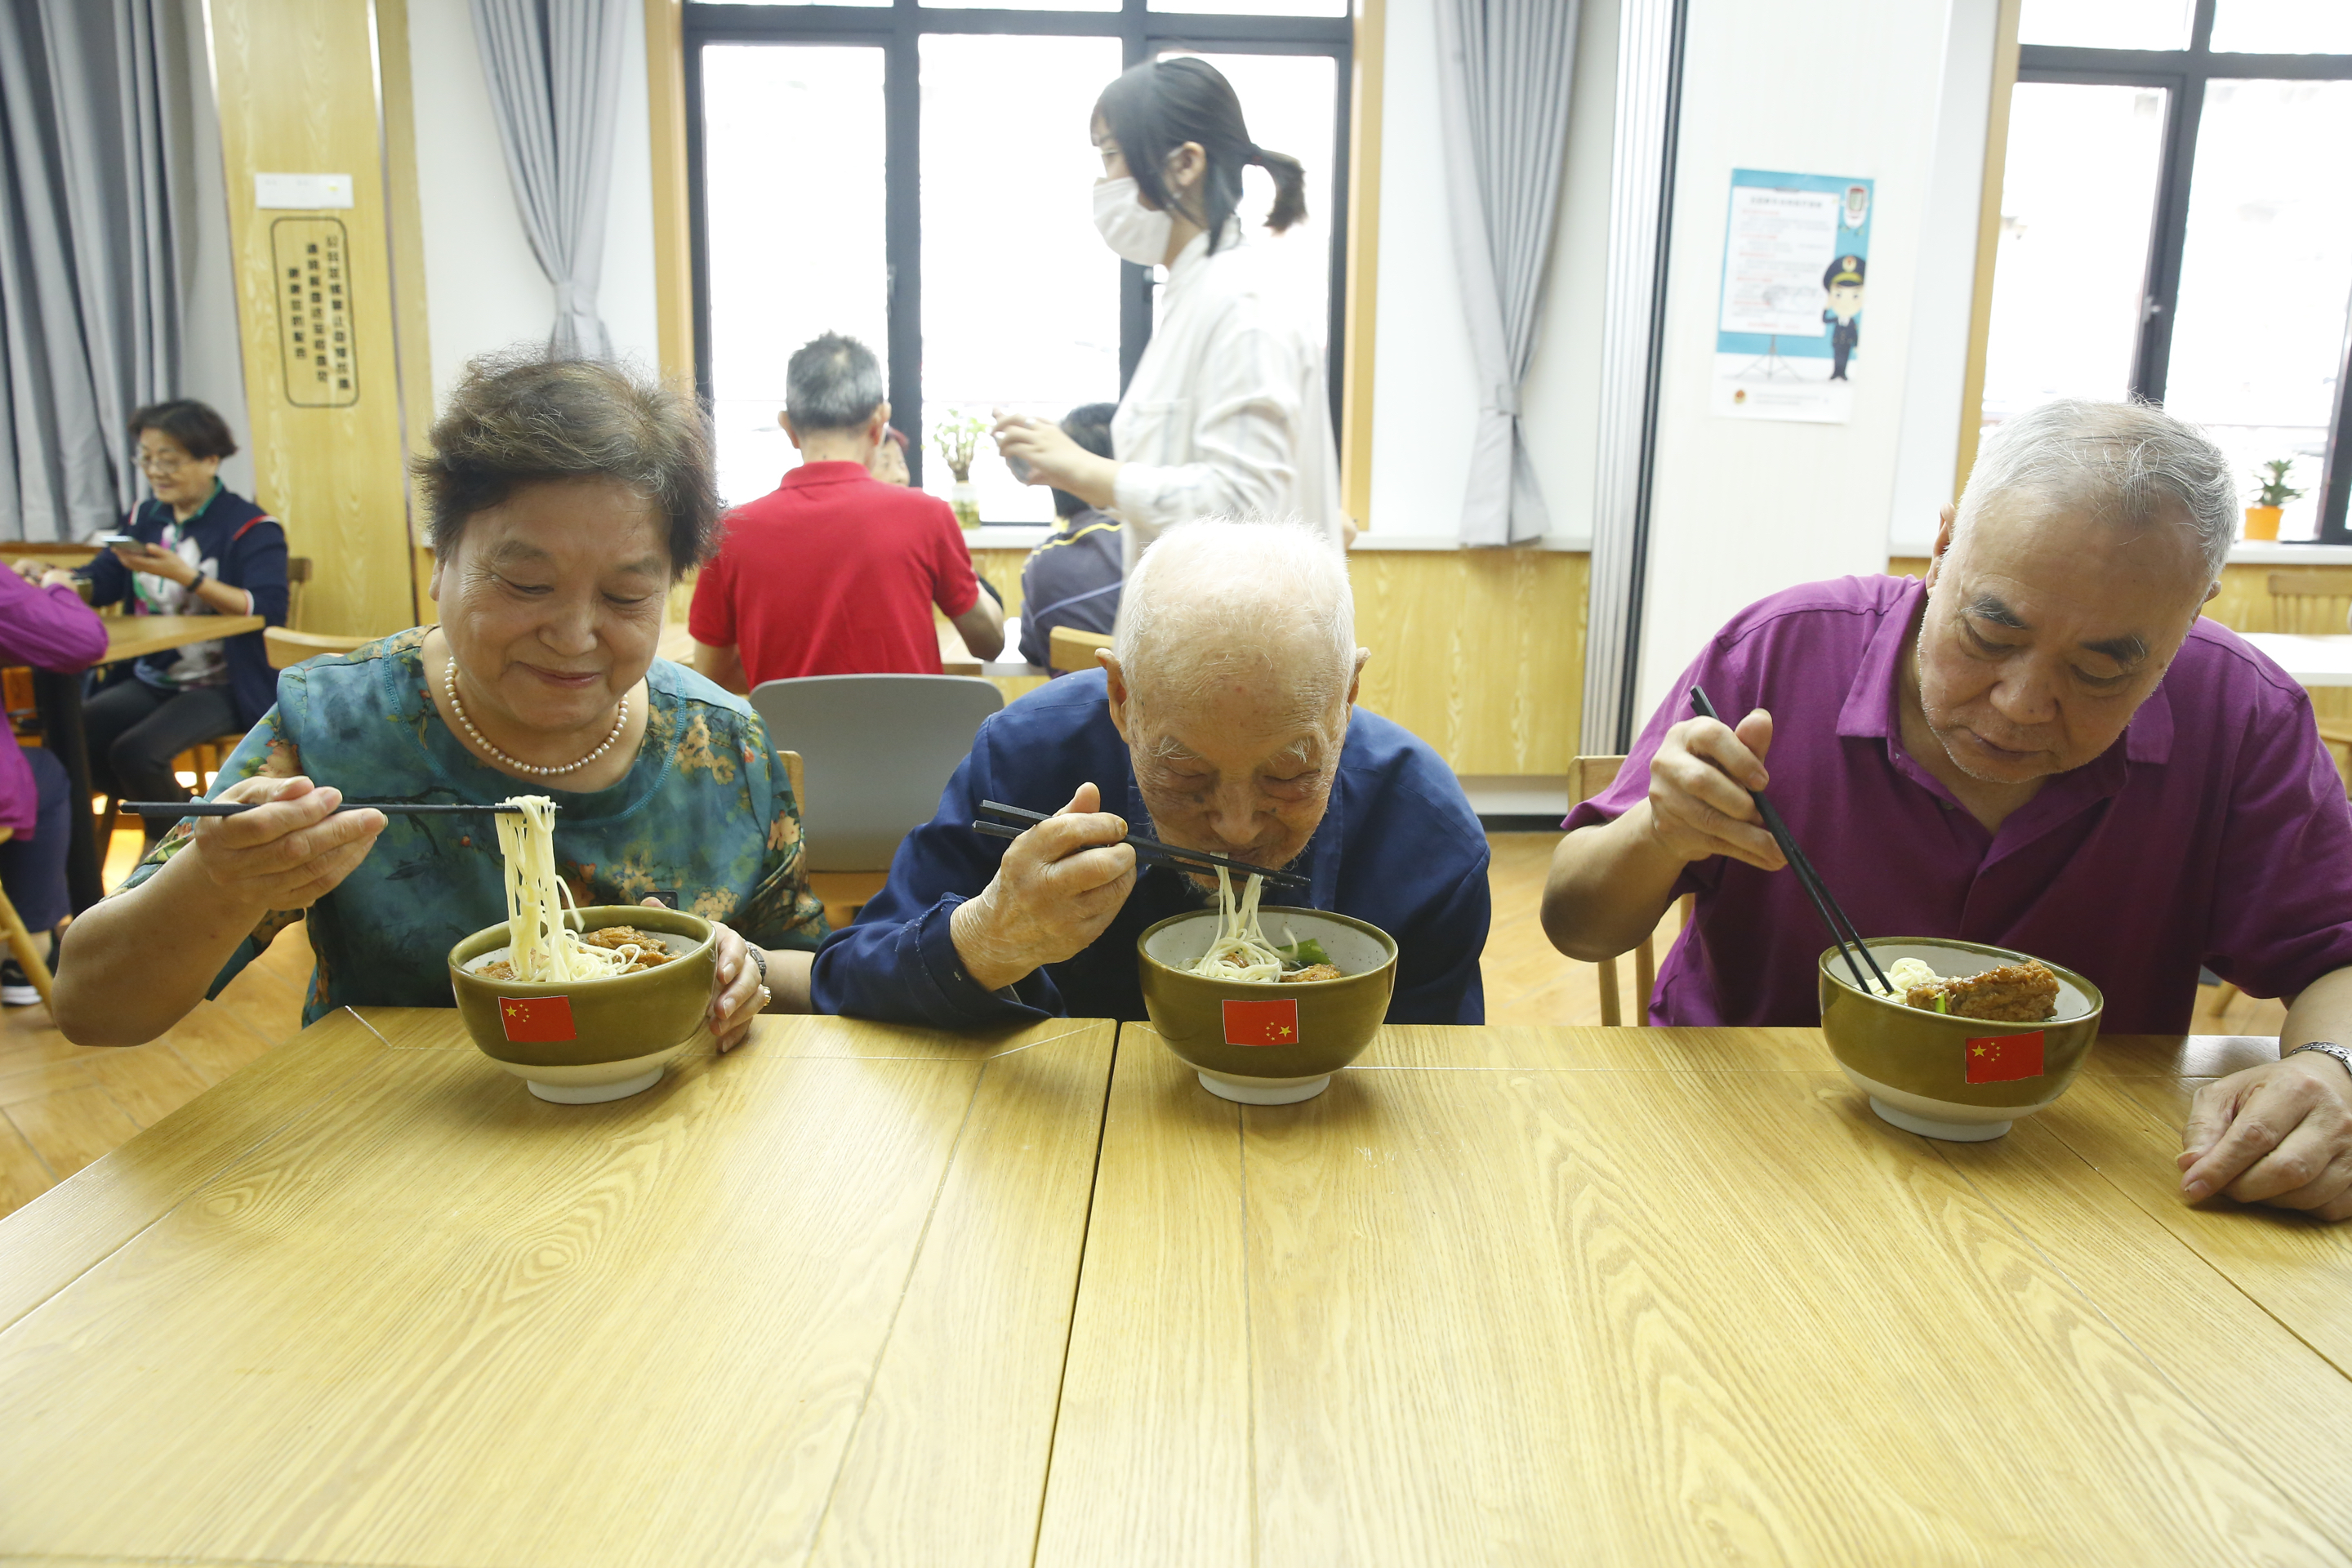 来自普陀区石泉路街道镇坪居民区106岁的李佩印老人(前排右二)正在和居民朋友一起吃国庆面。石泉路街道 